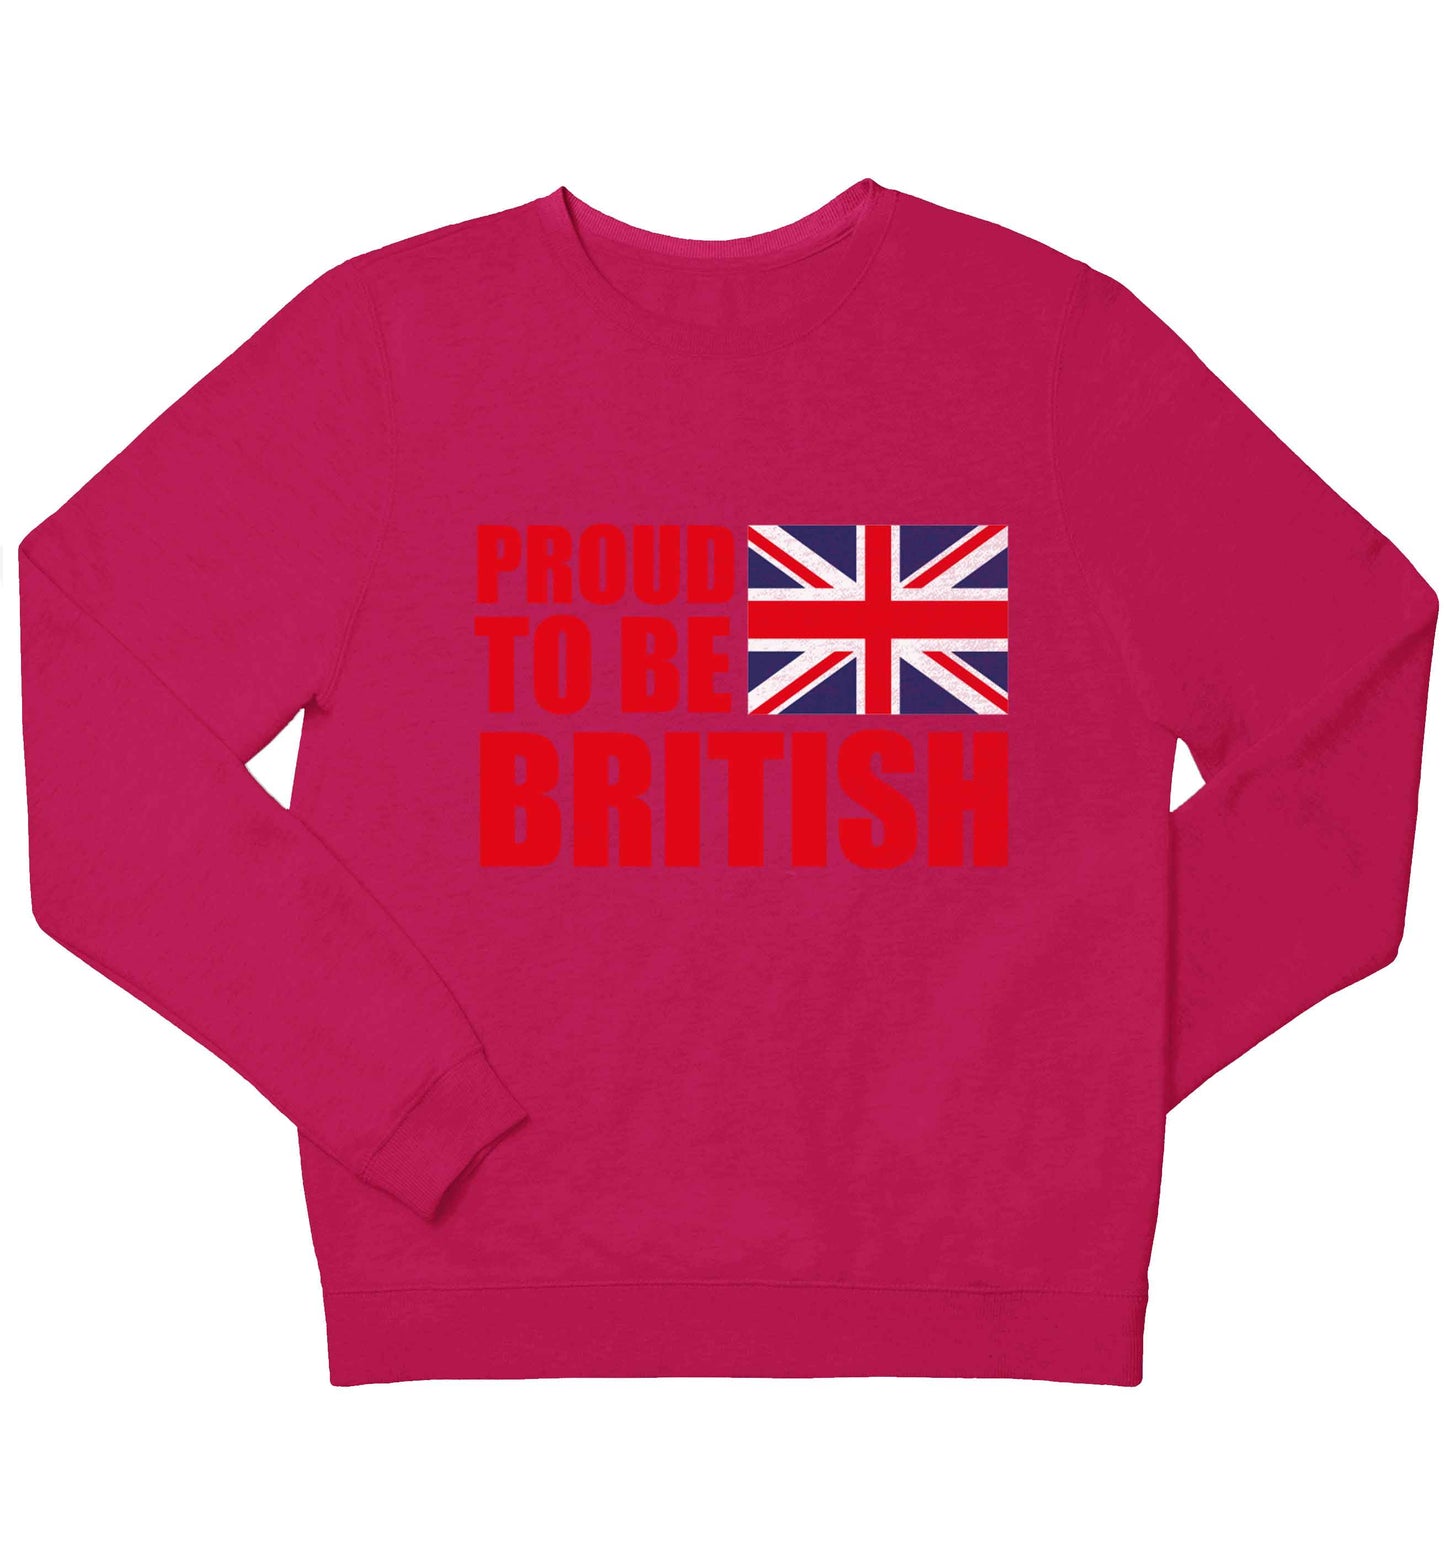 Proud to be British children's pink sweater 12-13 Years